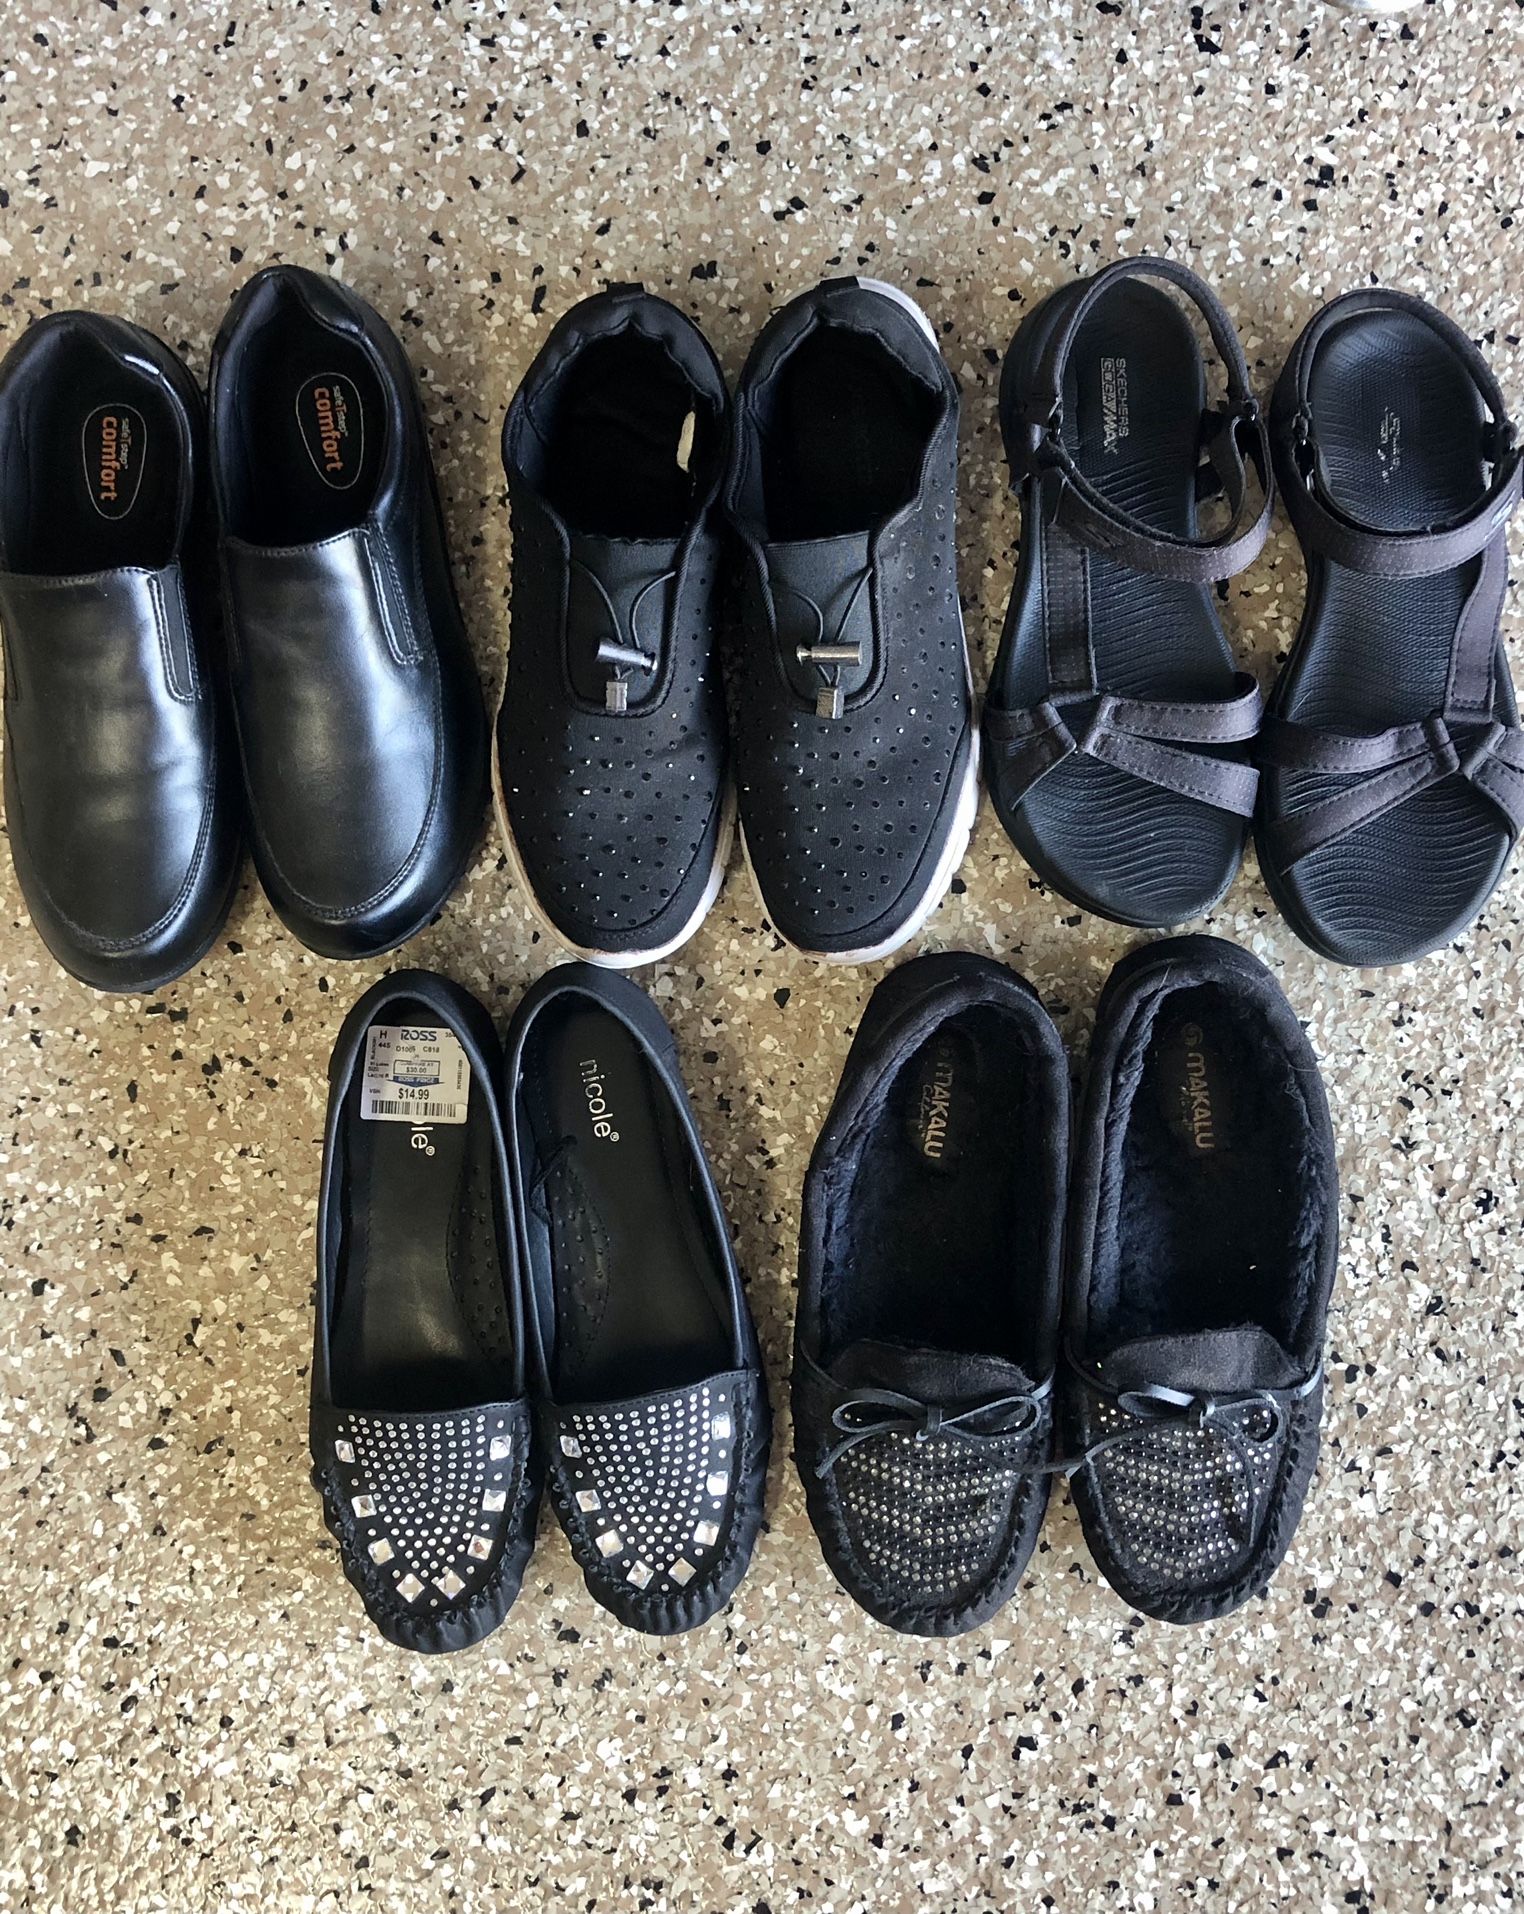 Size 8 Ladies Shoes $5/each